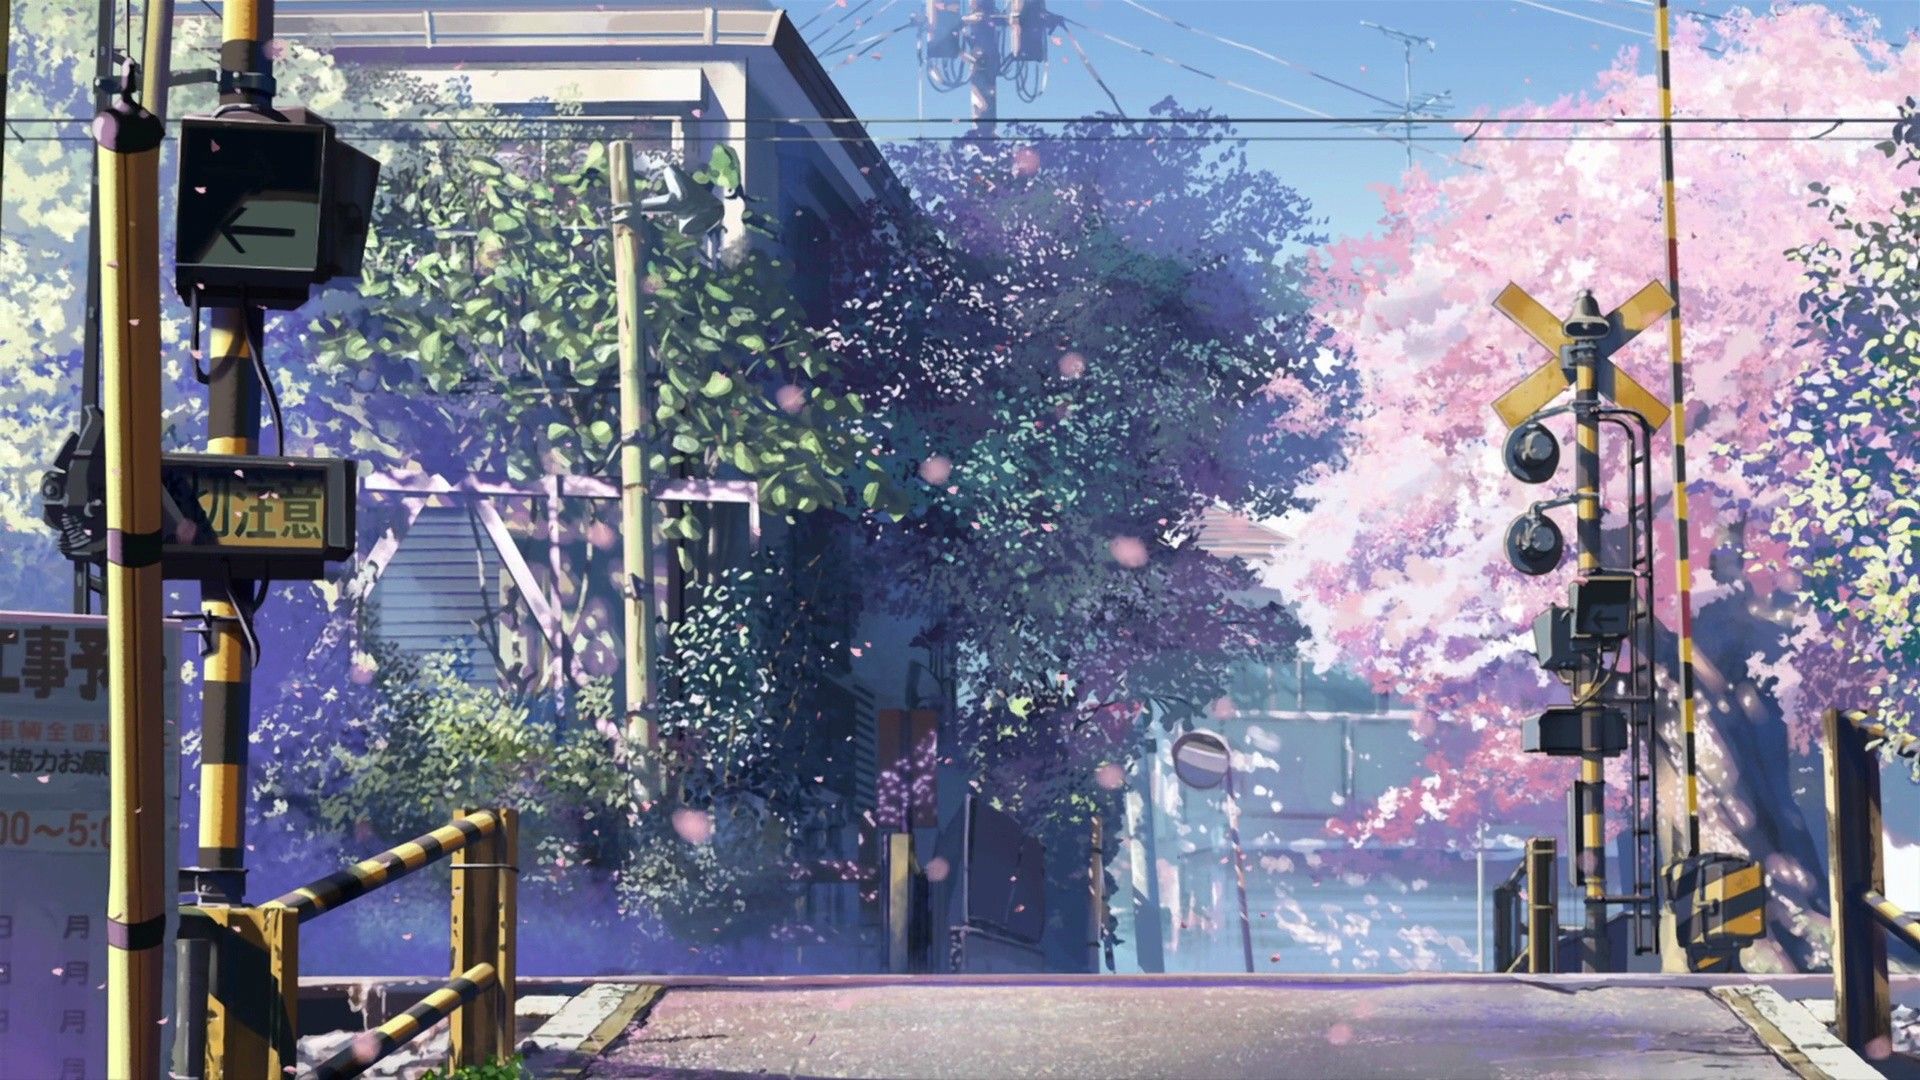 Bức tranh Anime Tokyo Scenery Wallpaper sẽ giúp bạn bước vào một thế giới kì diệu đầy màu sắc và độc đáo của thủ đô Nhật Bản. Từ cánh đồng hoa anh đào đến các địa danh nổi tiếng như Shibuya Crossing hay Golden Gai, bạn sẽ được khám phá những nét đẹp tinh tế của Tokyo thông qua hình ảnh tuyệt đẹp này.